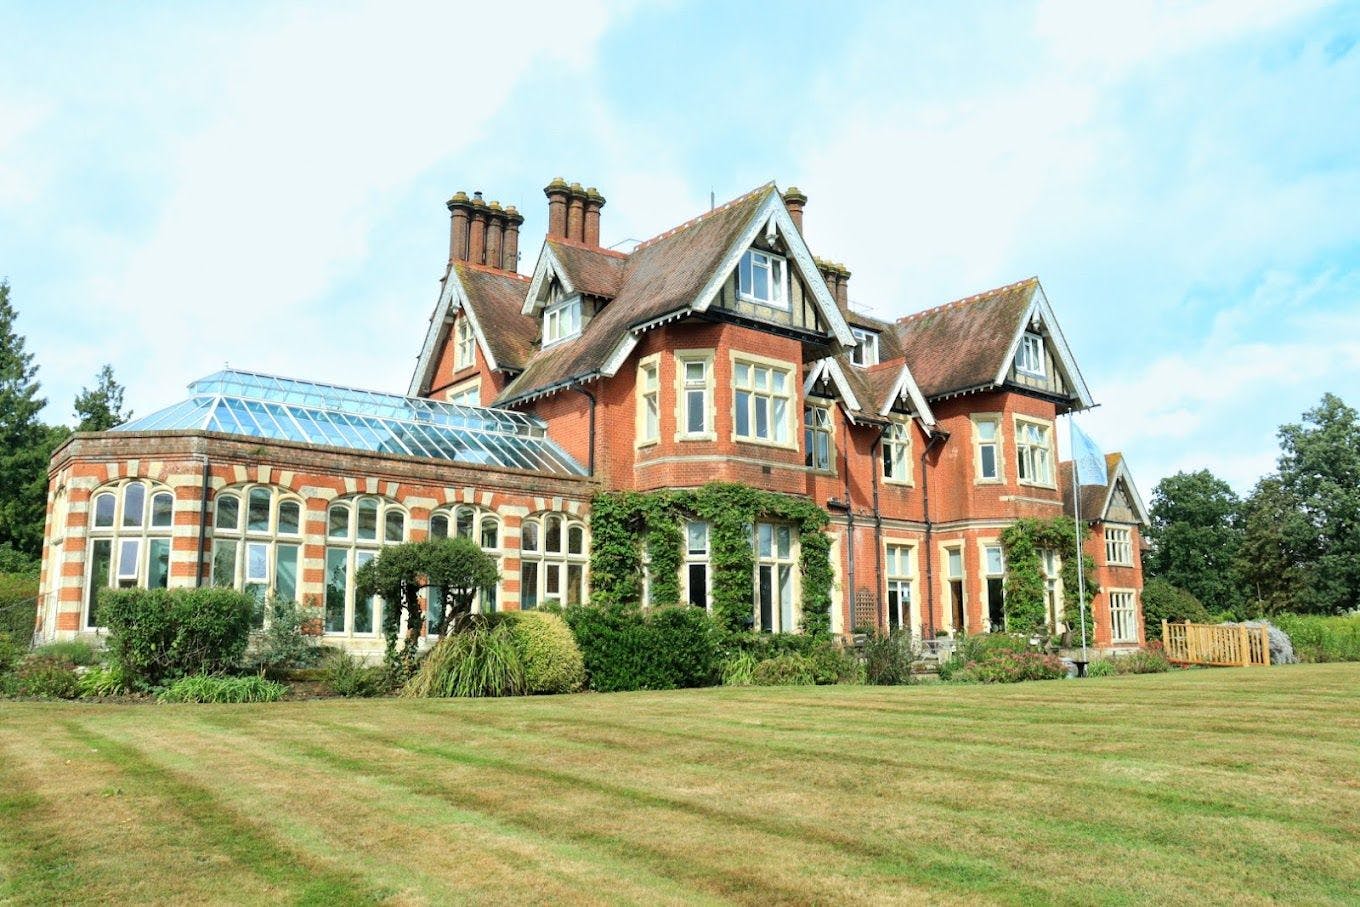 Iden Manor care home in Staplehurst 1